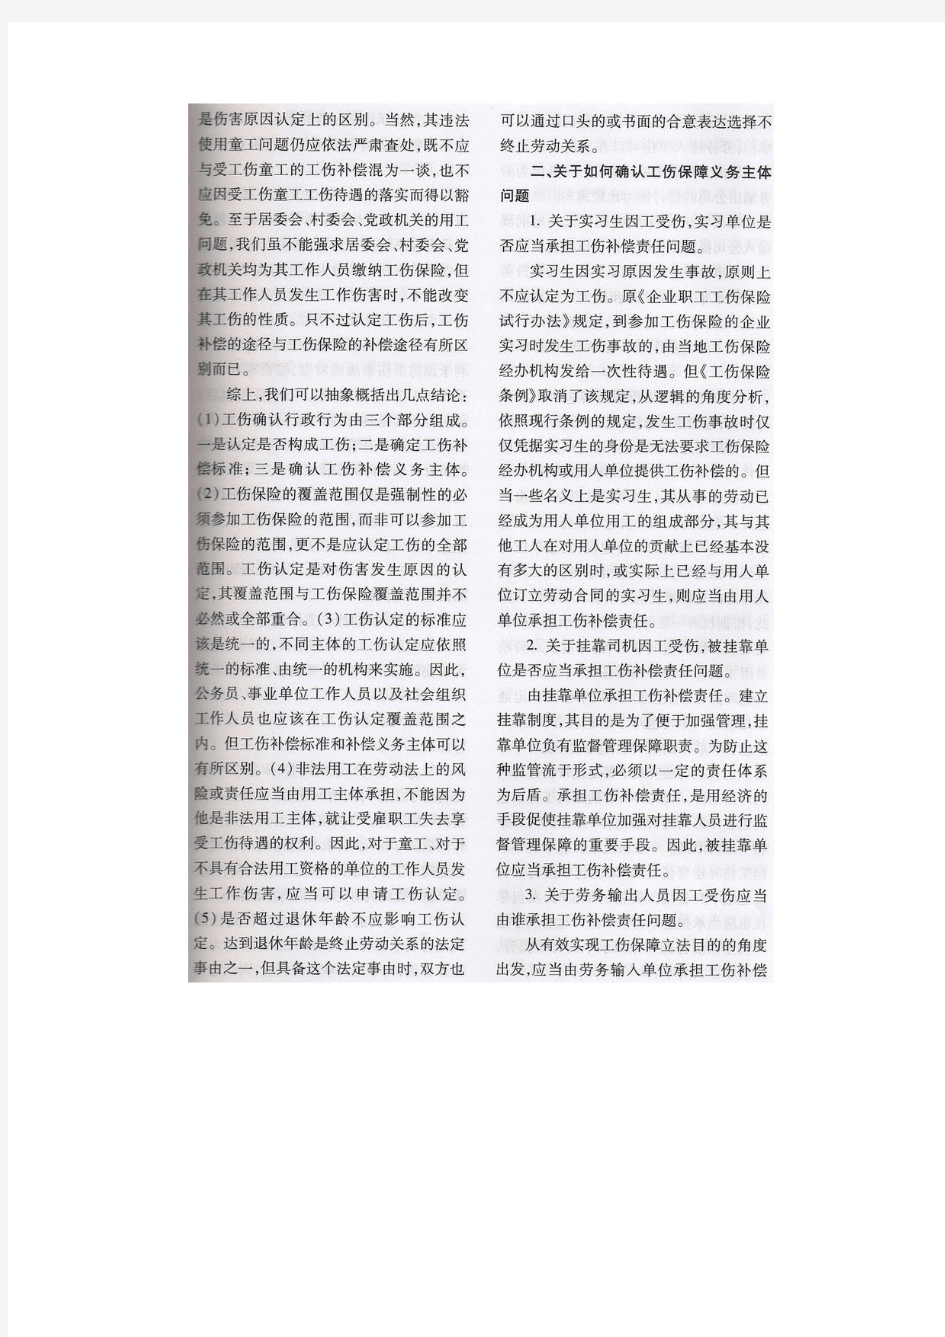 江苏省高院行政庭 《工伤行政案件司法审查经验》2010年